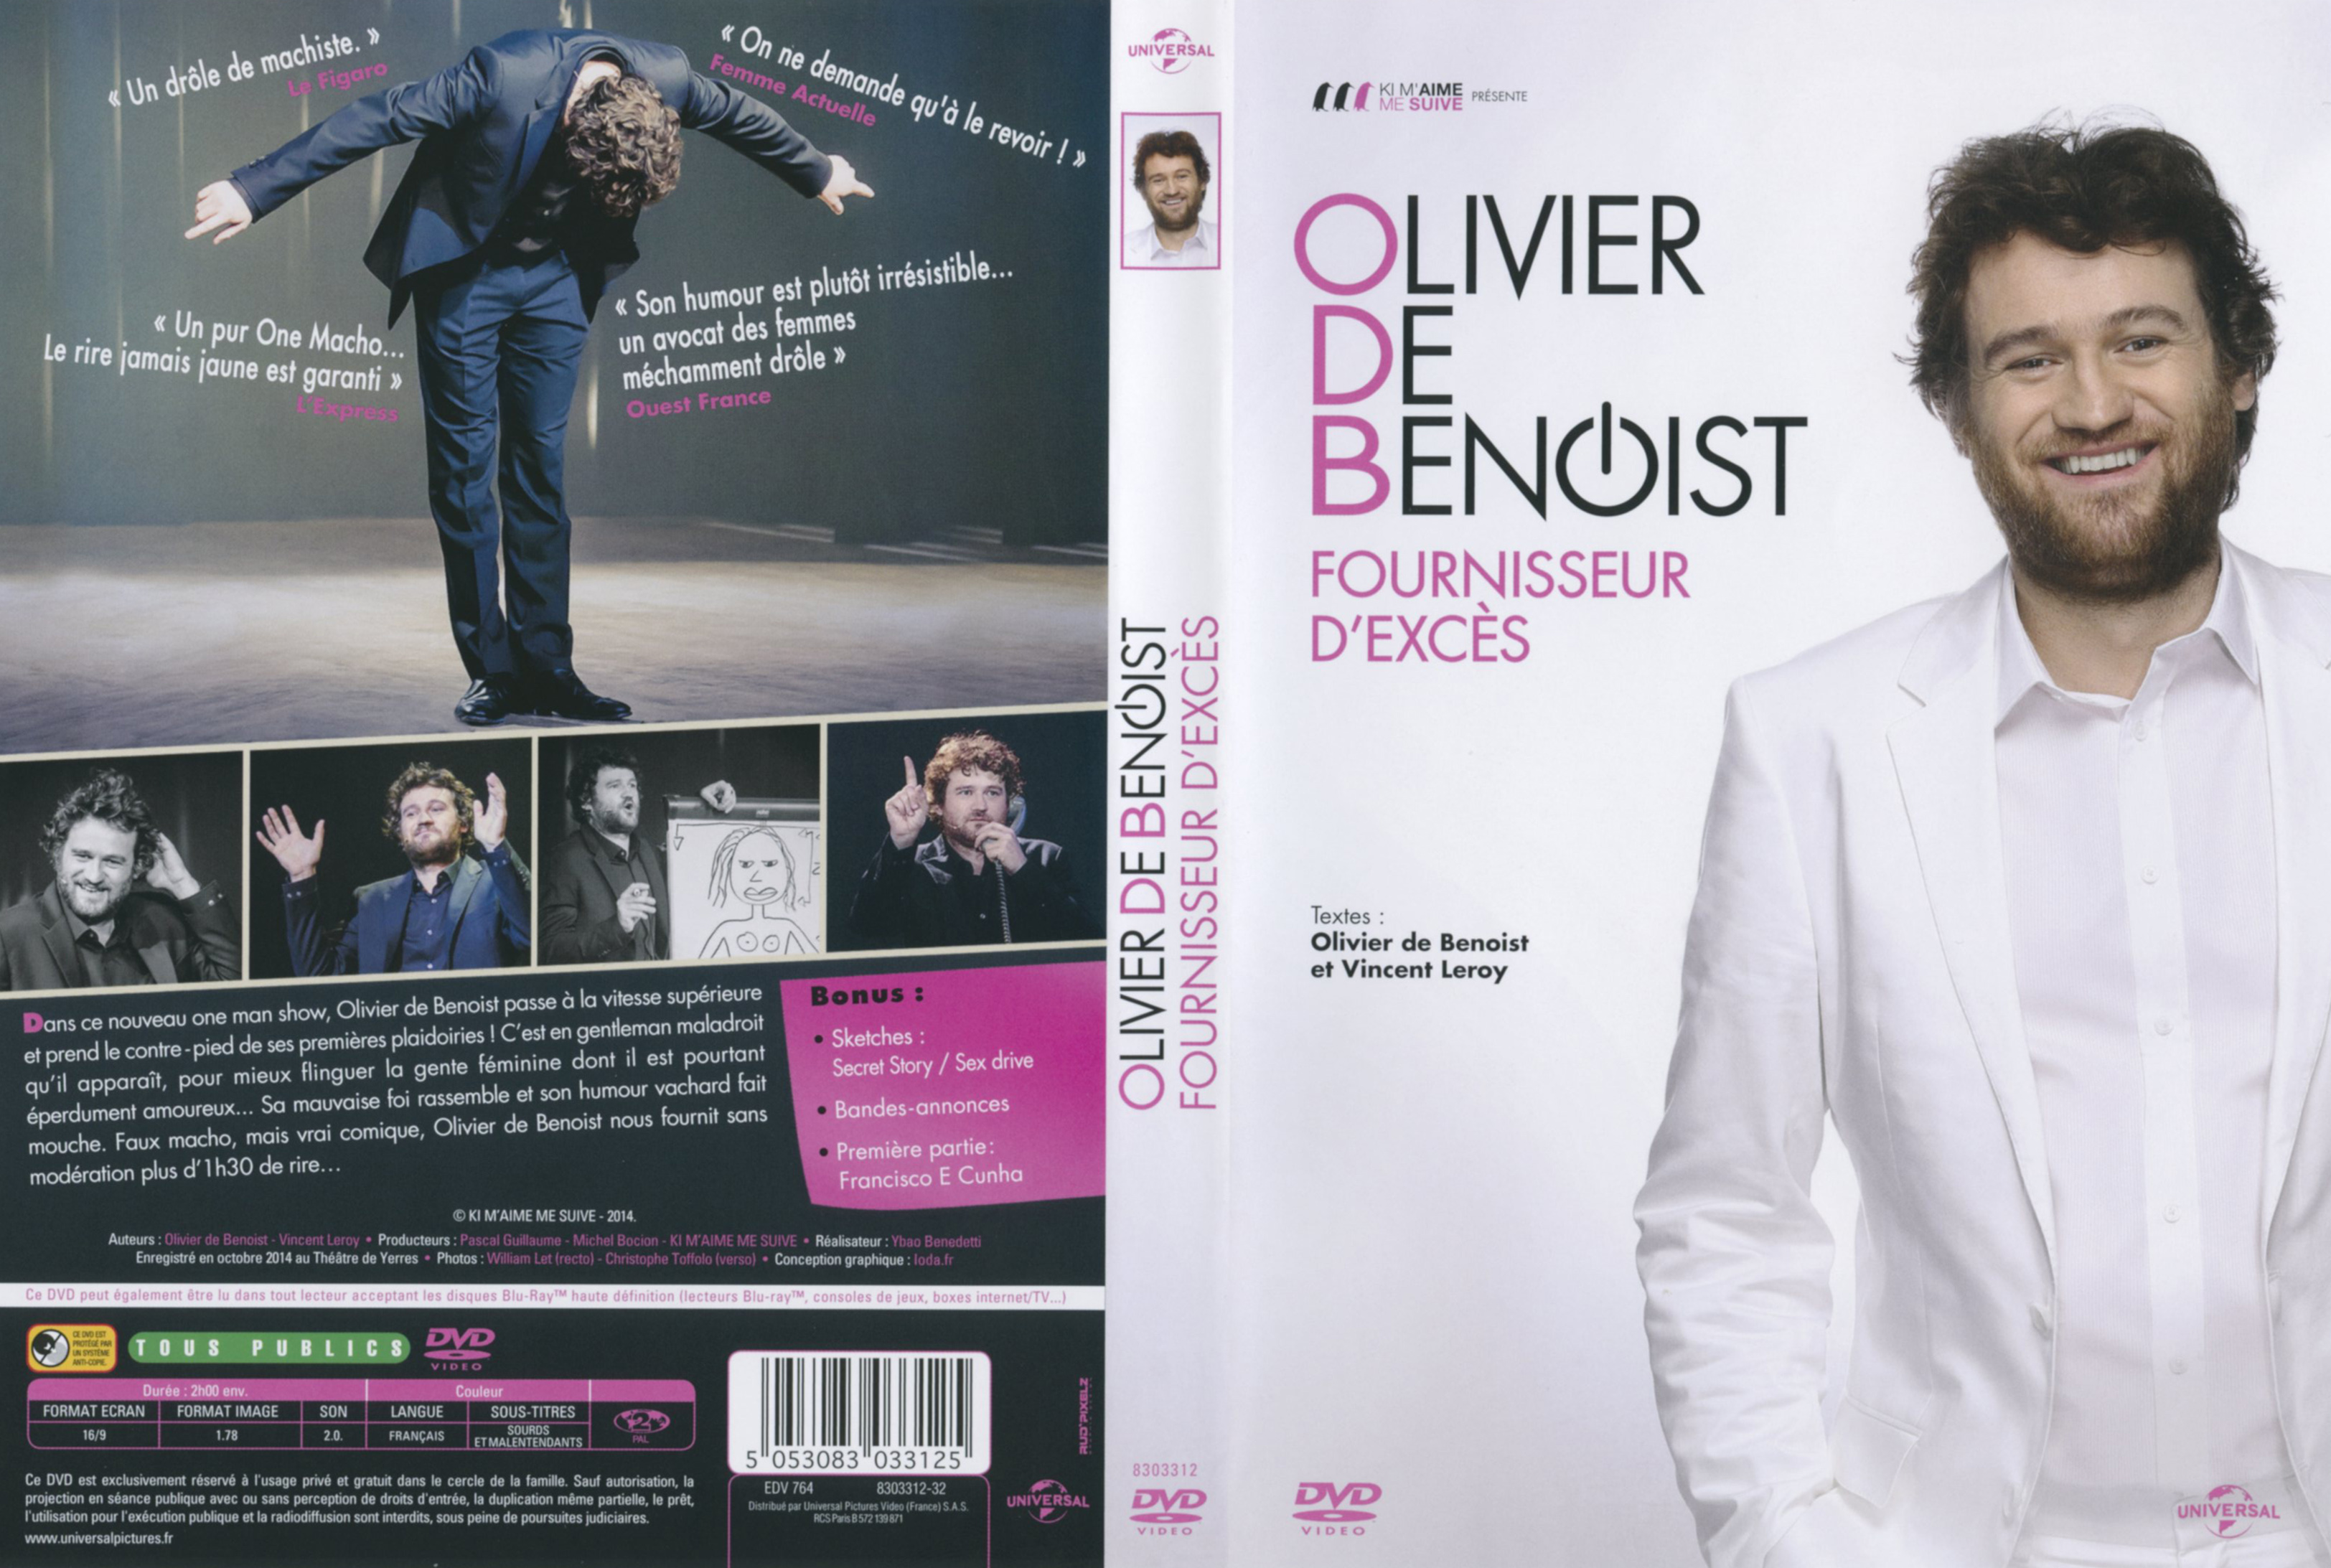 Jaquette DVD Olivier de Benoist fournisseur d